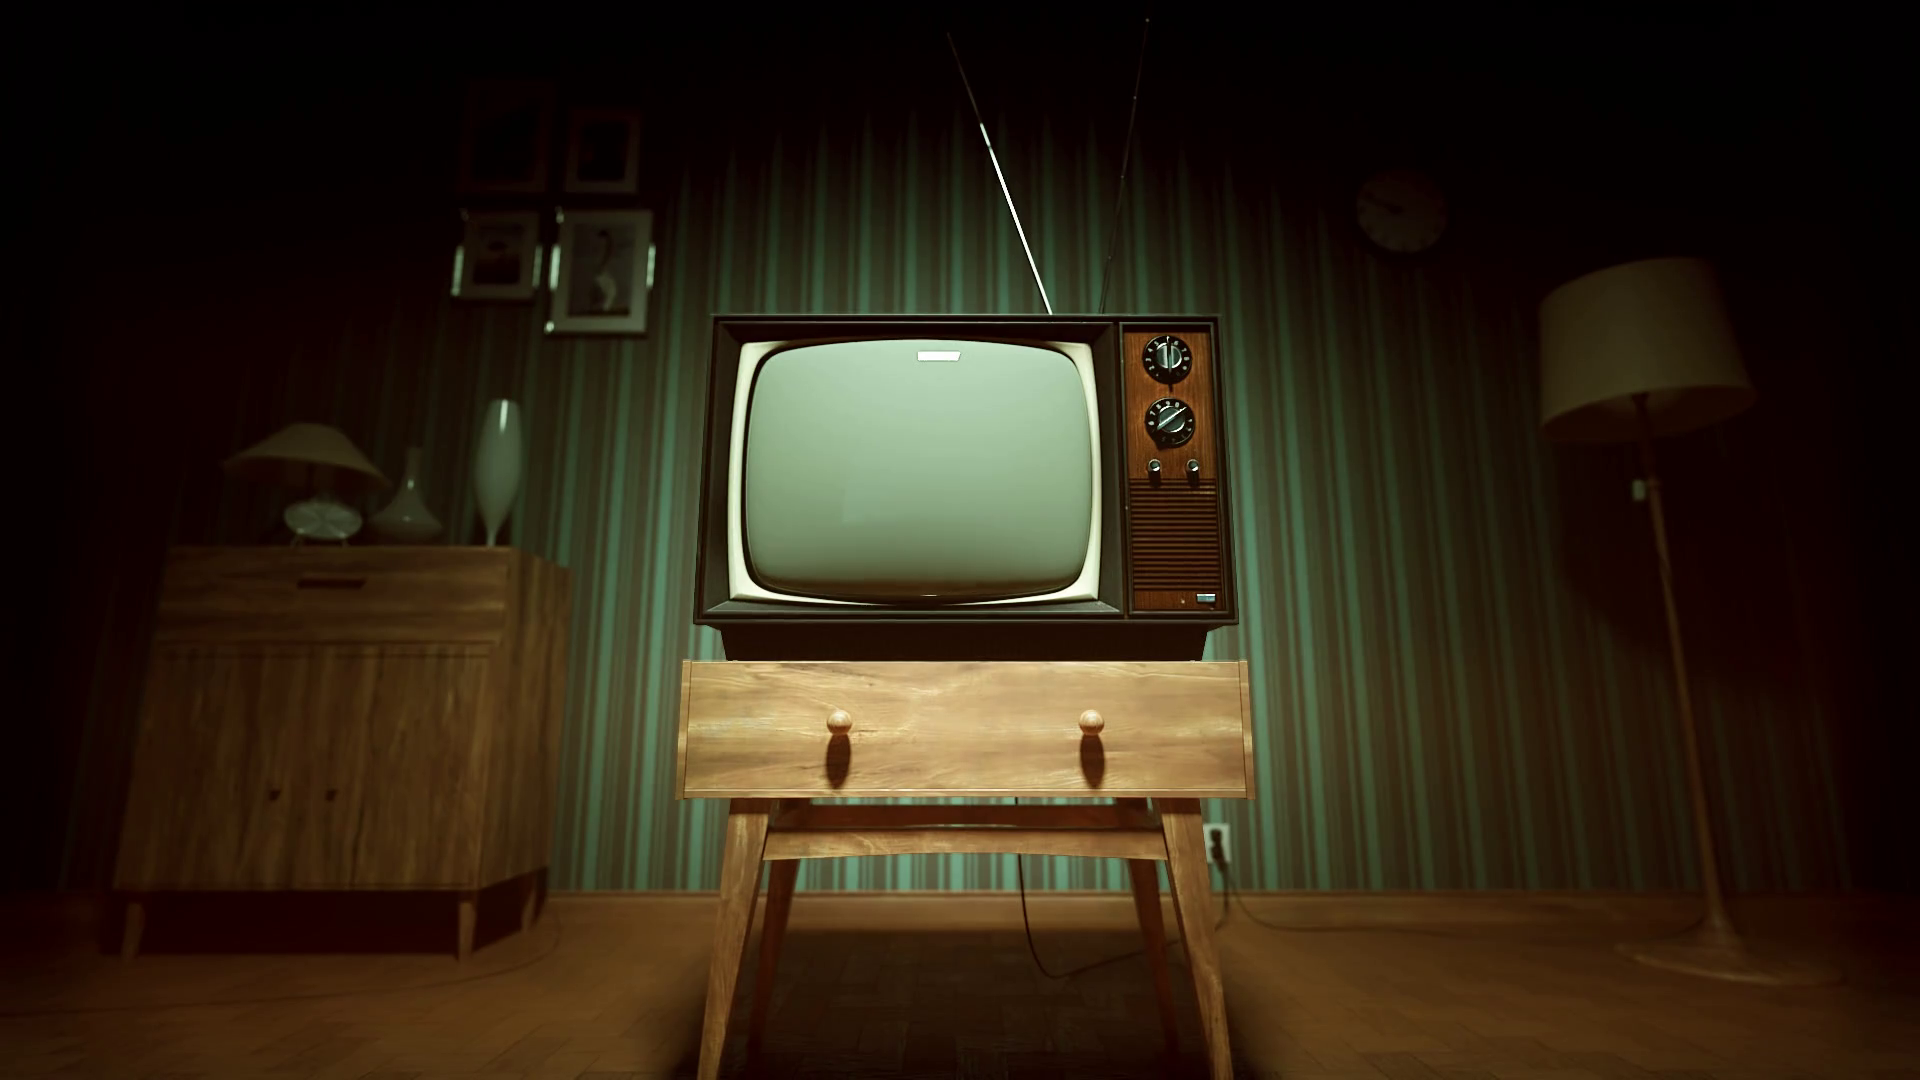 Видимо телевизор. Старый телевизор. Старый телевизор в комнате. Комната с телевизором. Телевизор в темной комнате.